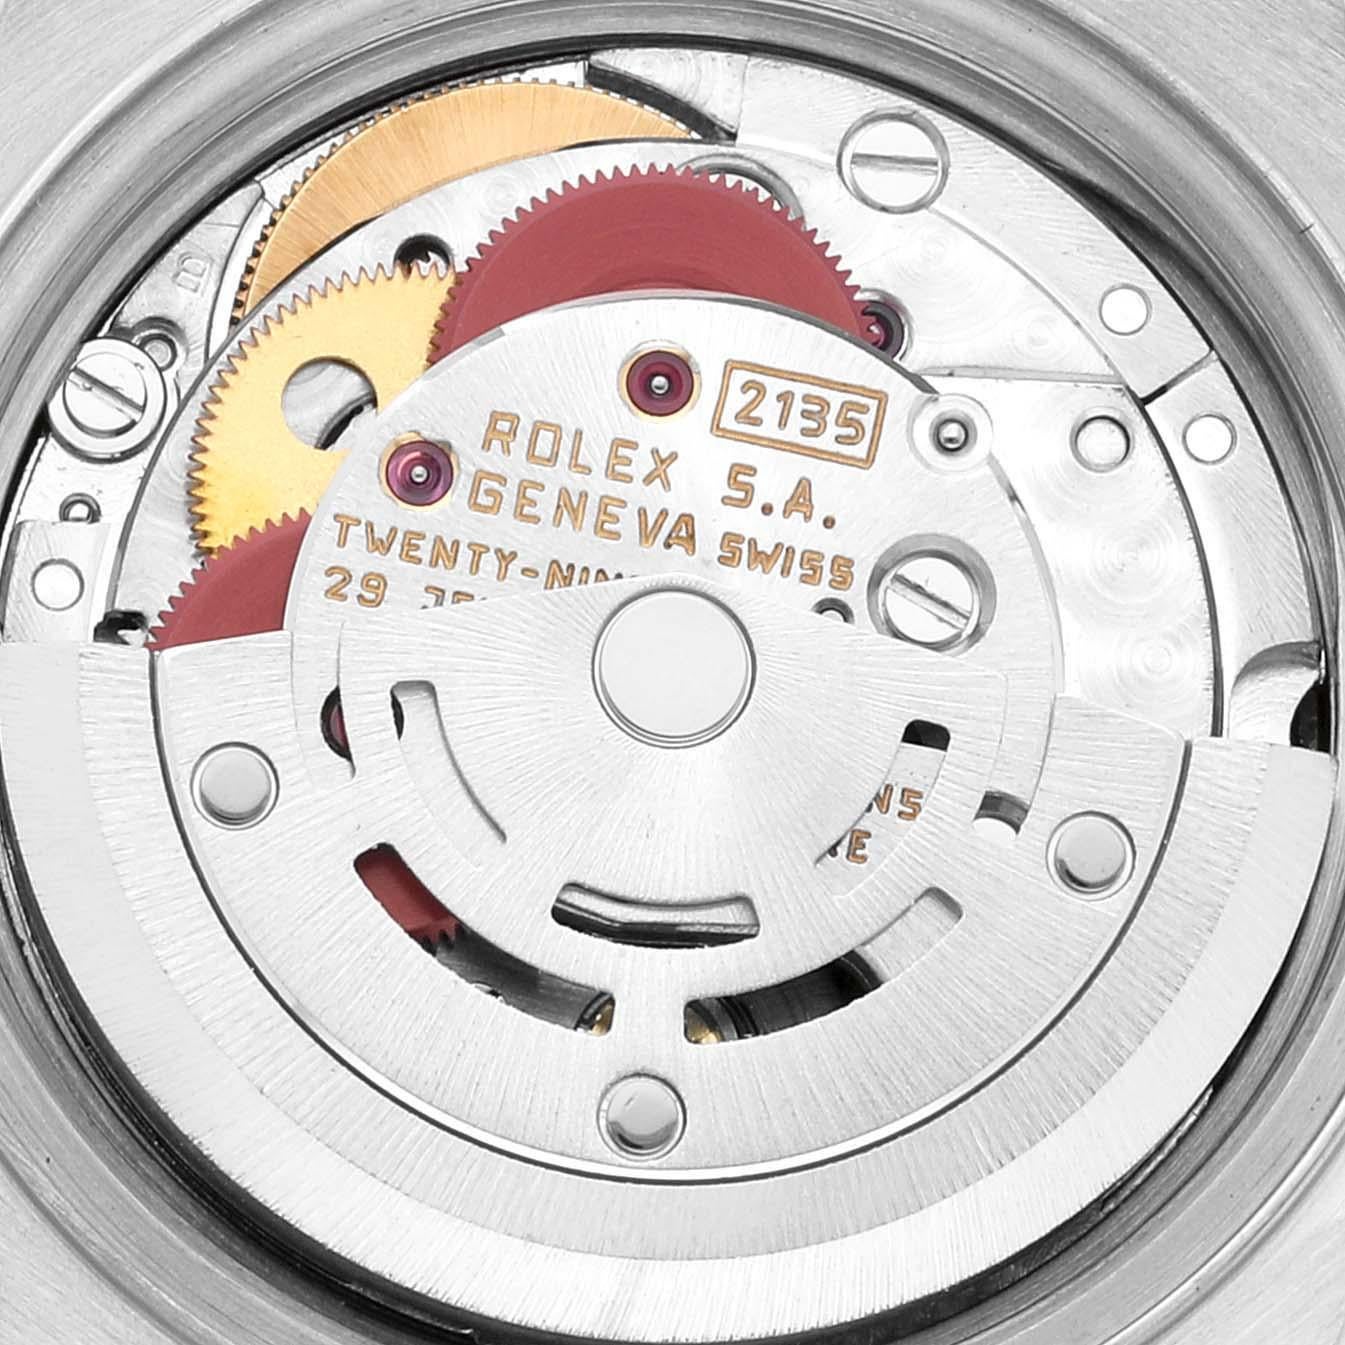 Rolex Datejust Steel Yellow Gold Tapestry Dial Ladies Watch 69173. Mouvement automatique à remontage automatique, officiellement certifié chronomètre. Boîtier oyster en acier inoxydable de 26.0 mm de diamètre. Logo Rolex sur la couronne. Lunette